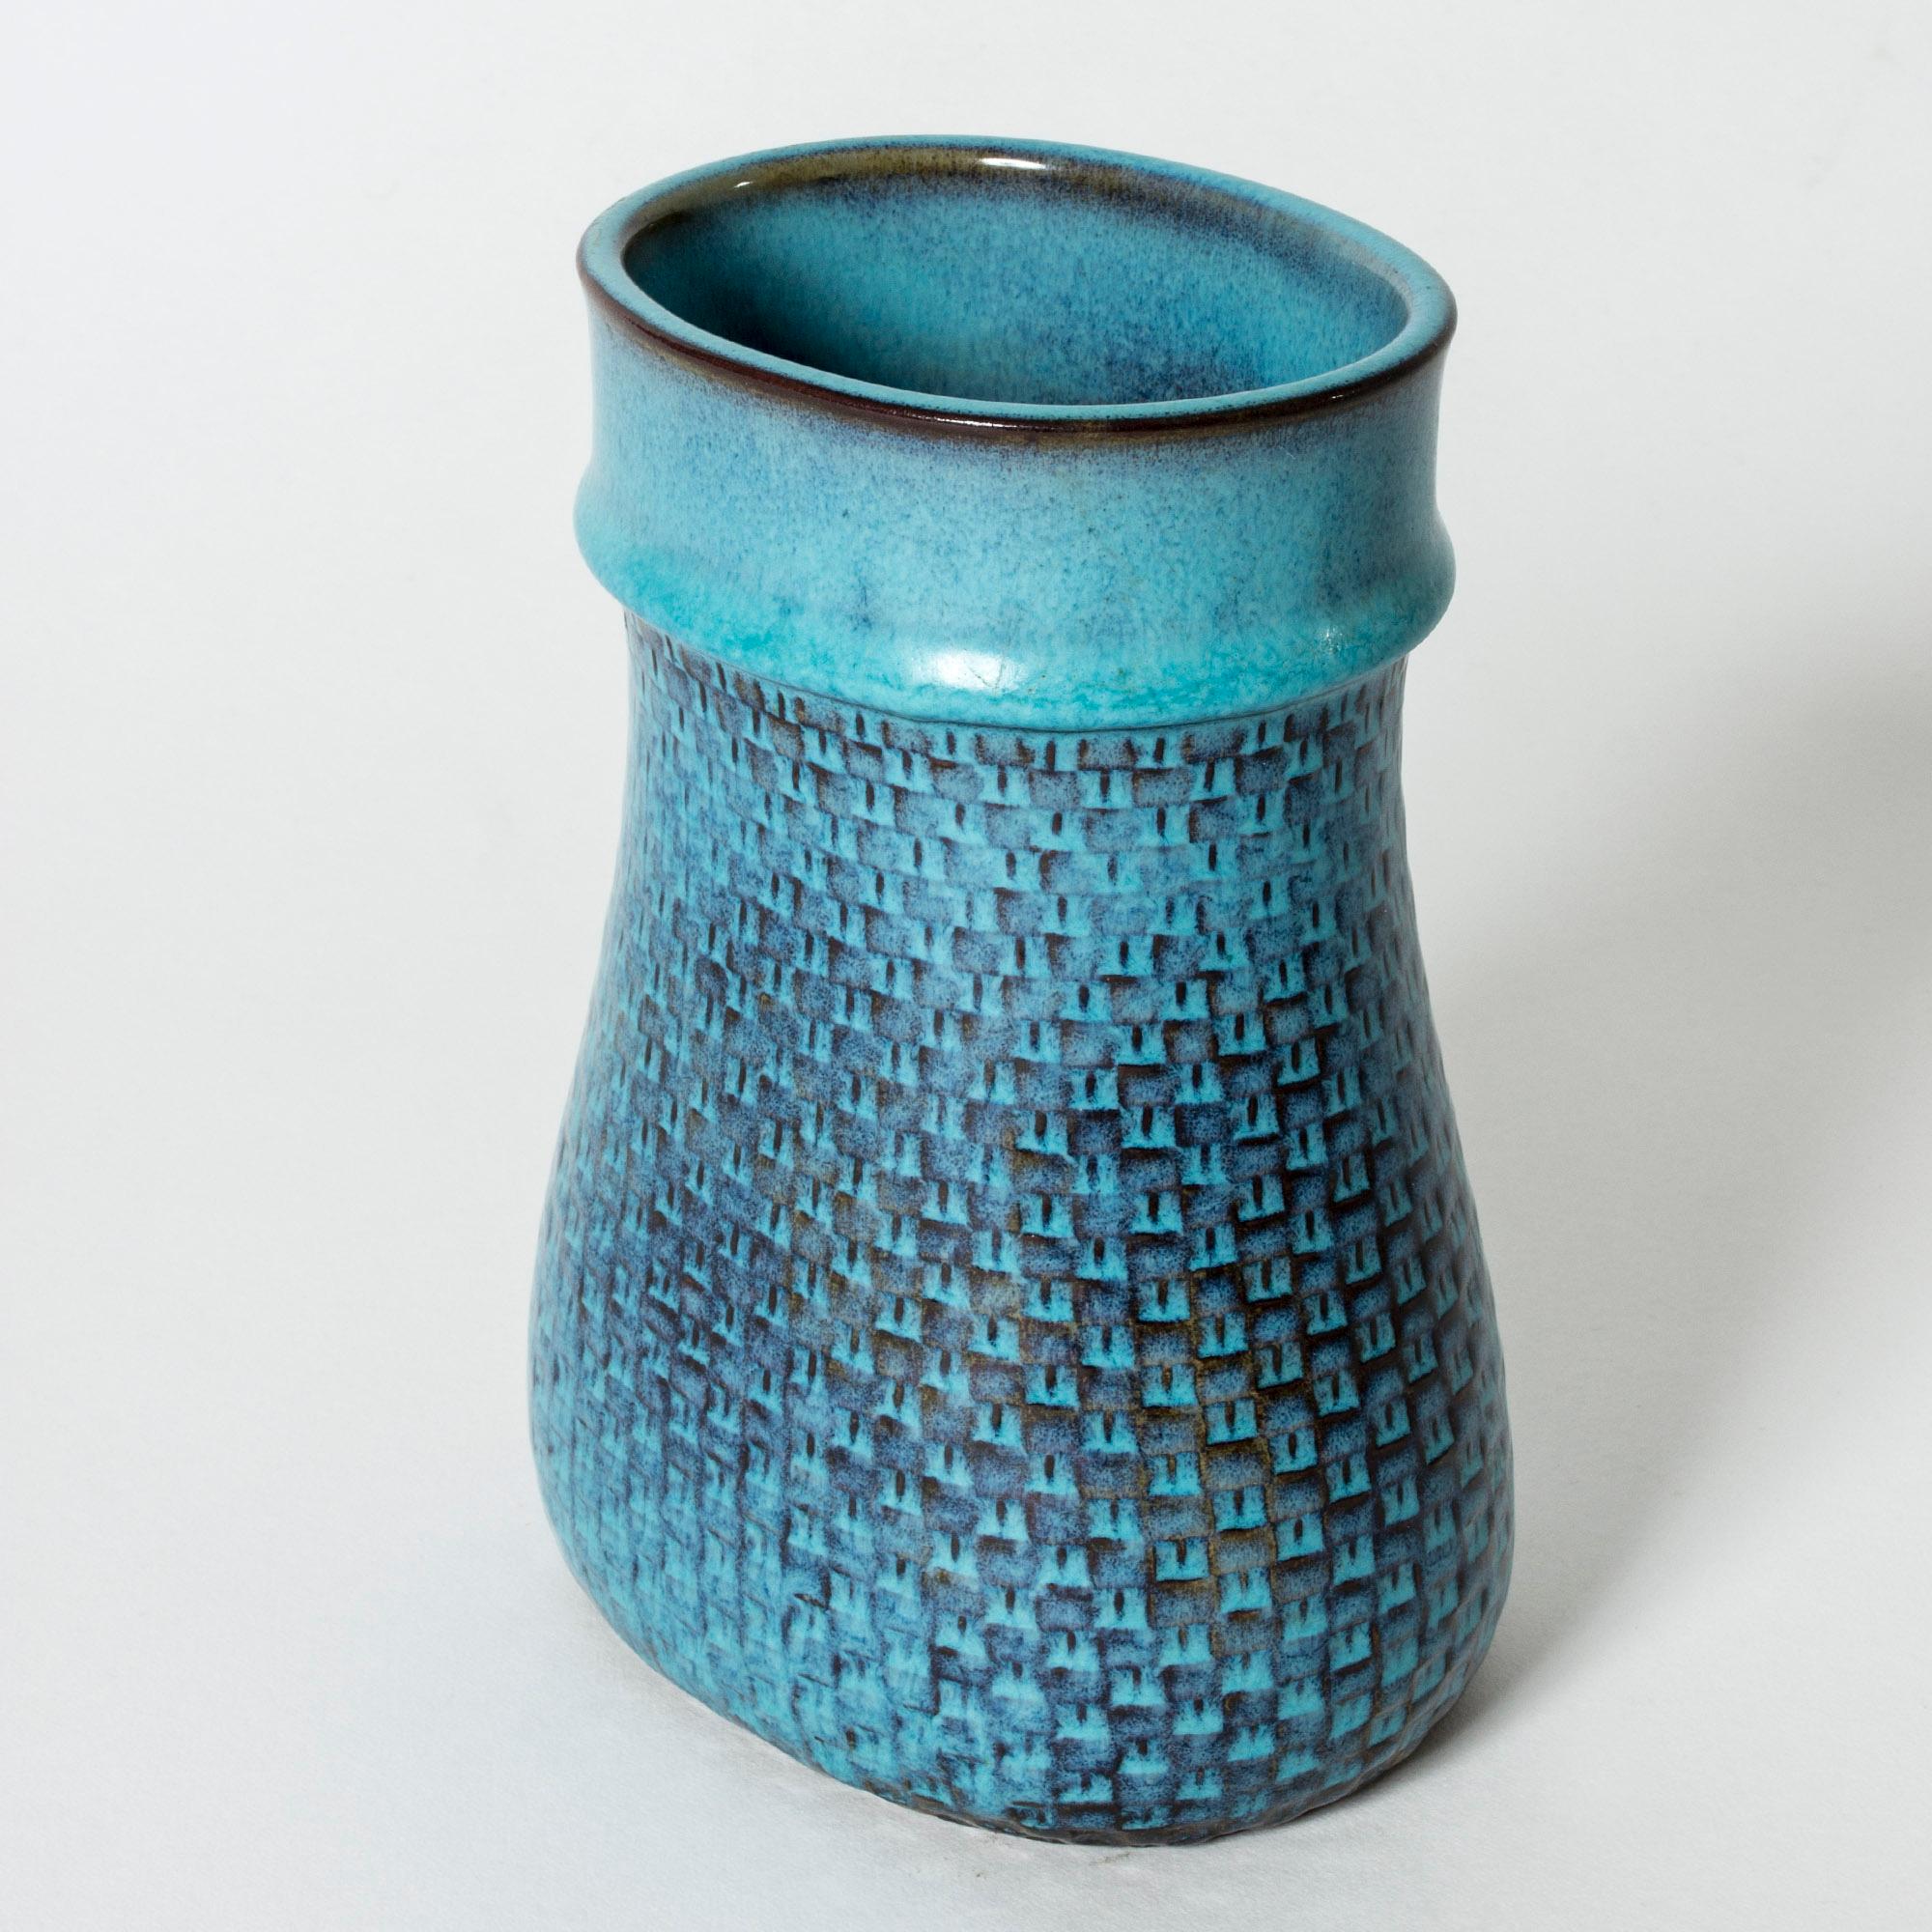 Wunderschöne, einzigartige Steinzeugvase von Stig Lindberg in einer skurrilen Beutelform und mit einem auffälligen grafischen Muster. Schöne blaue und sattbraune Glasur, die sich über den Körper legt.